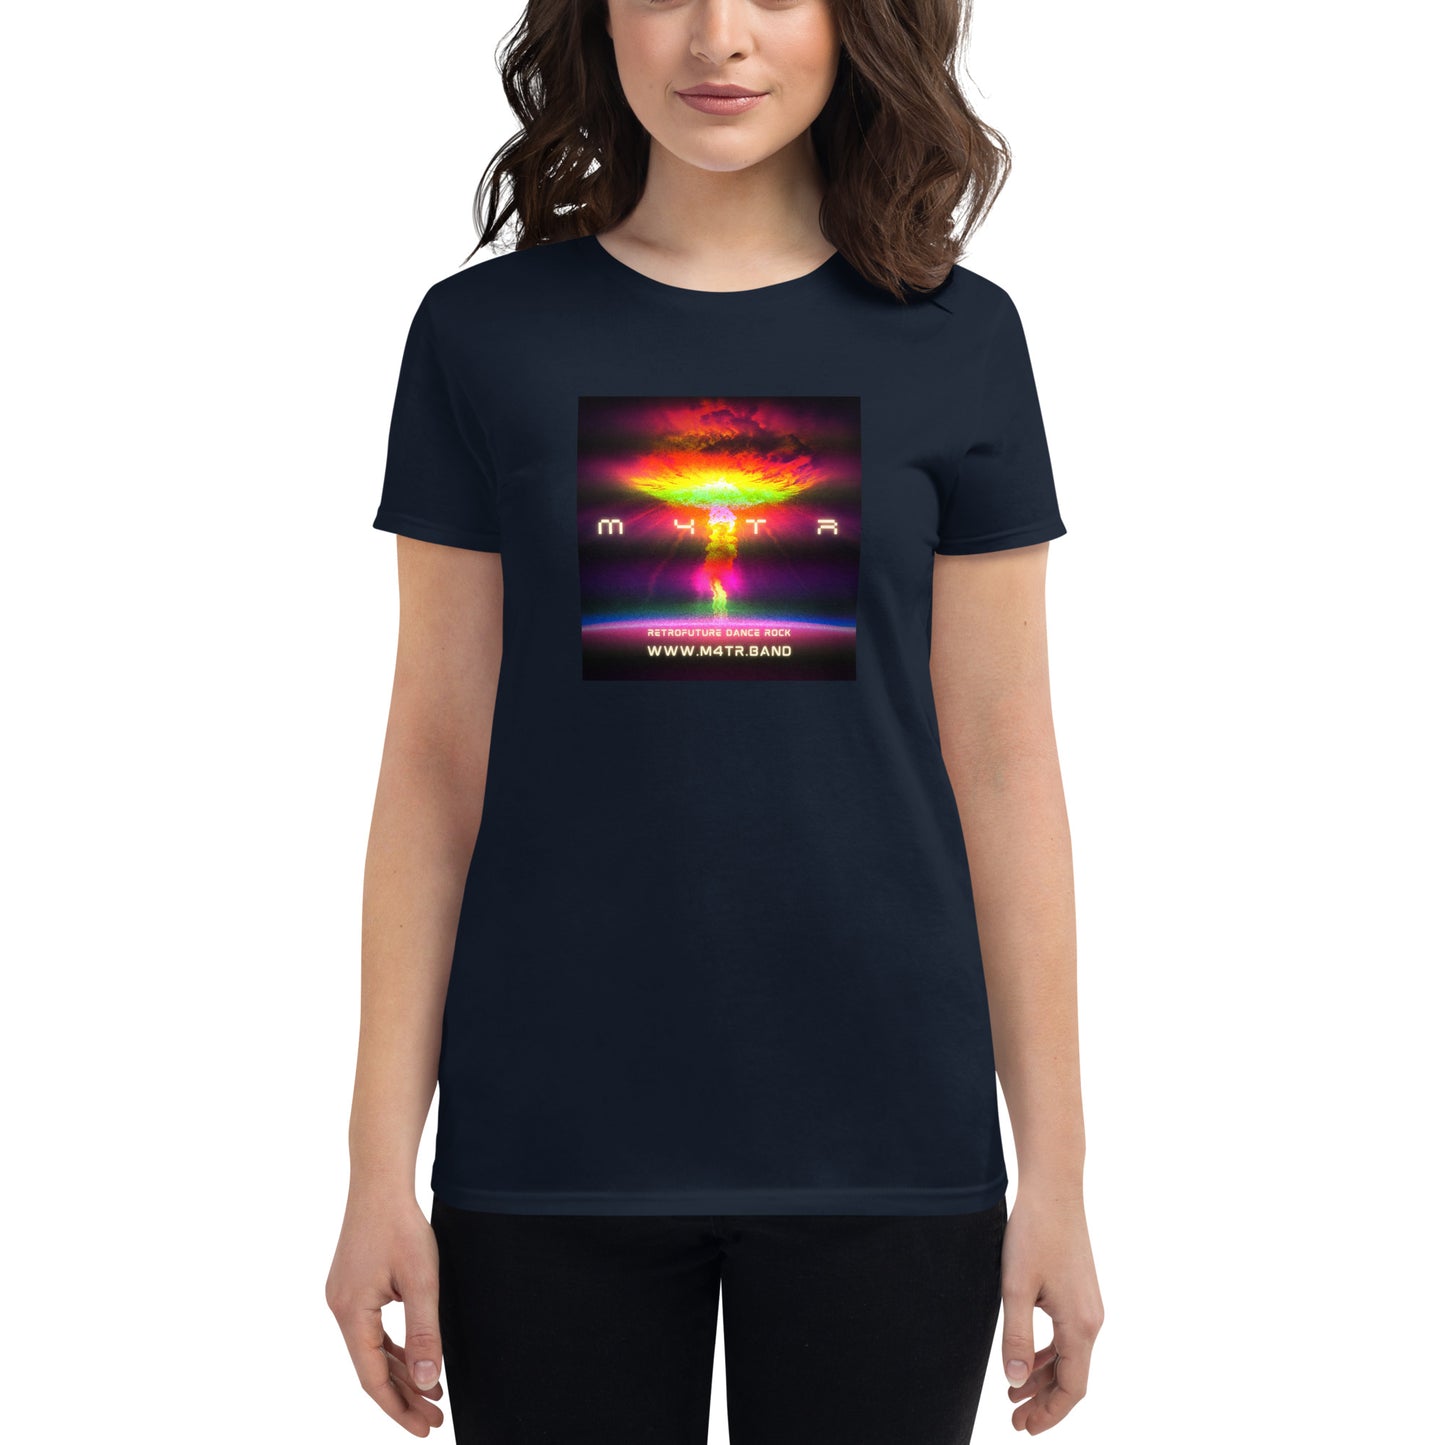 Women's short sleeve t-shirt (No Tomorrow Cloud)